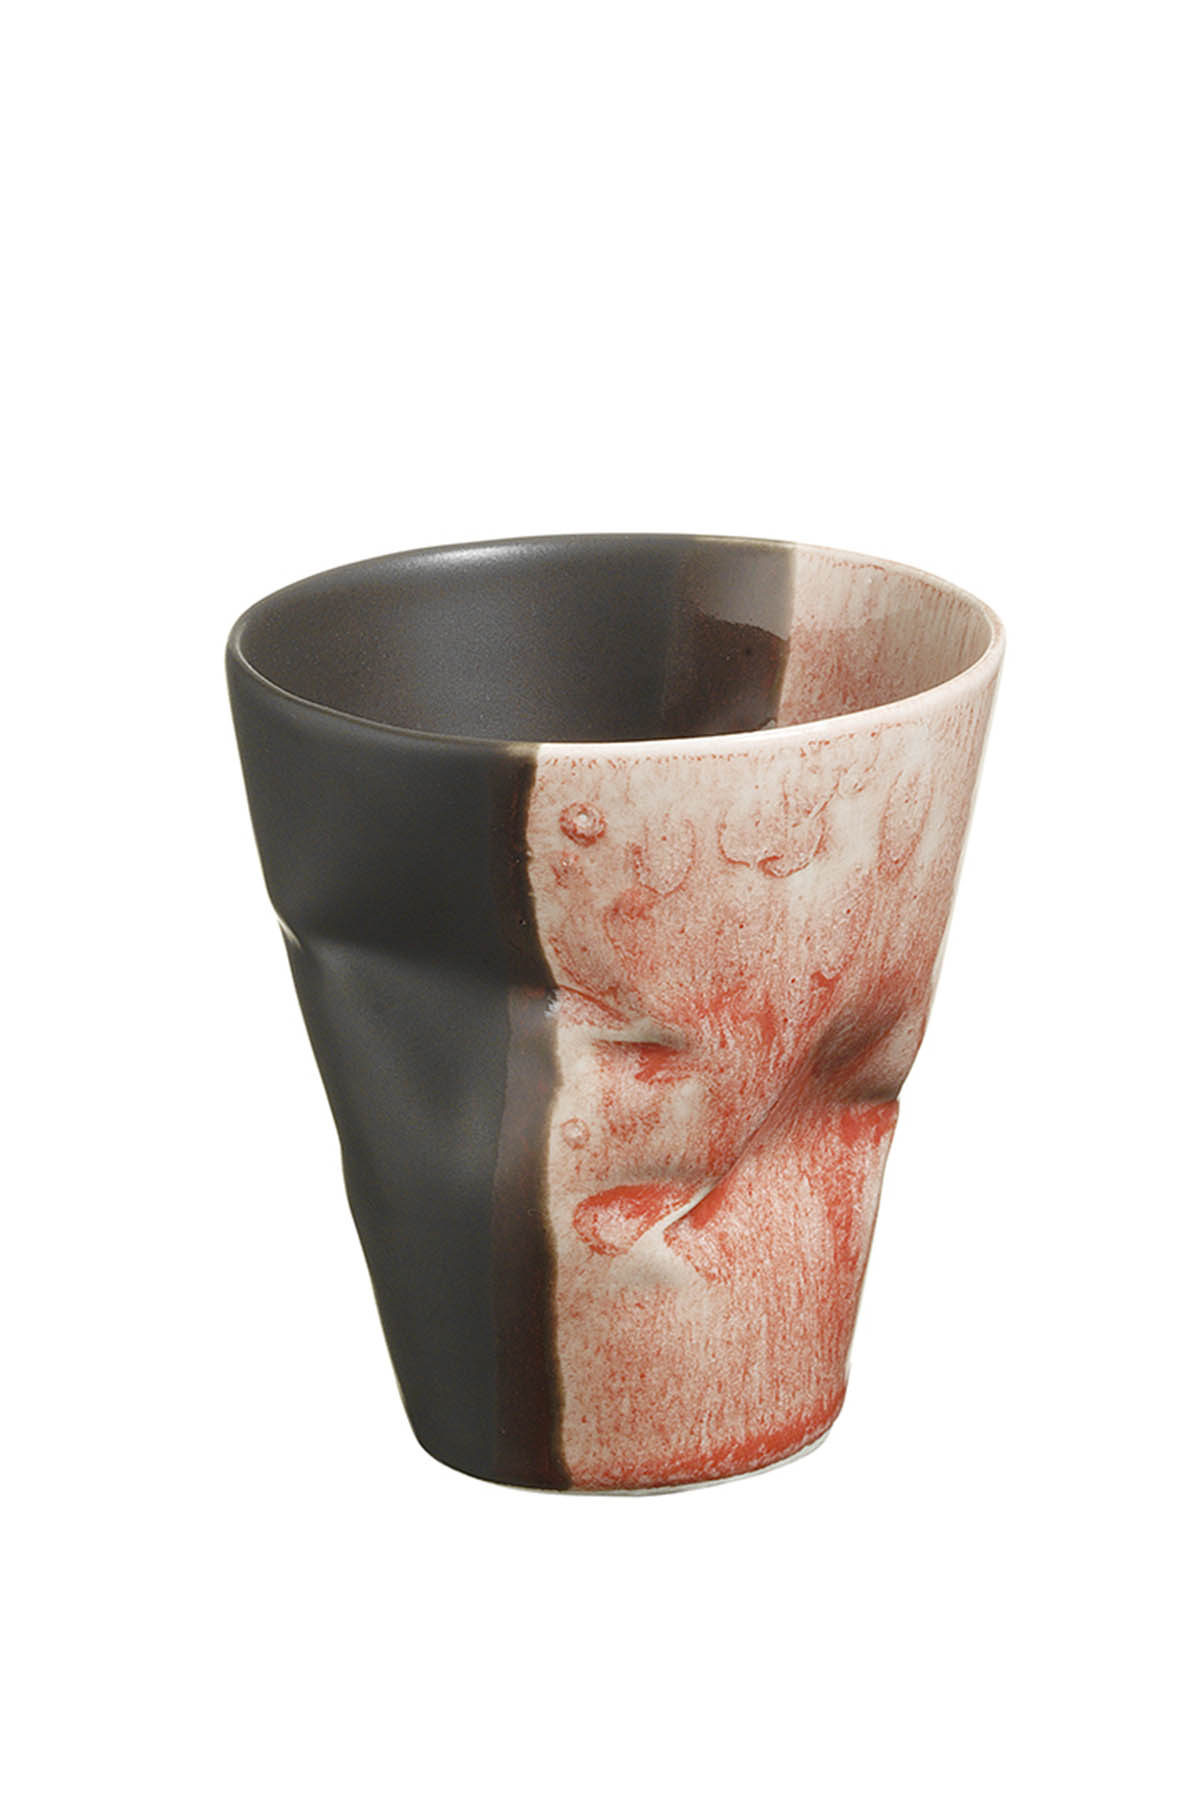 Kütahya Porselen Crash 2 Kişilik Mug Seti Kırmızı/Siyah